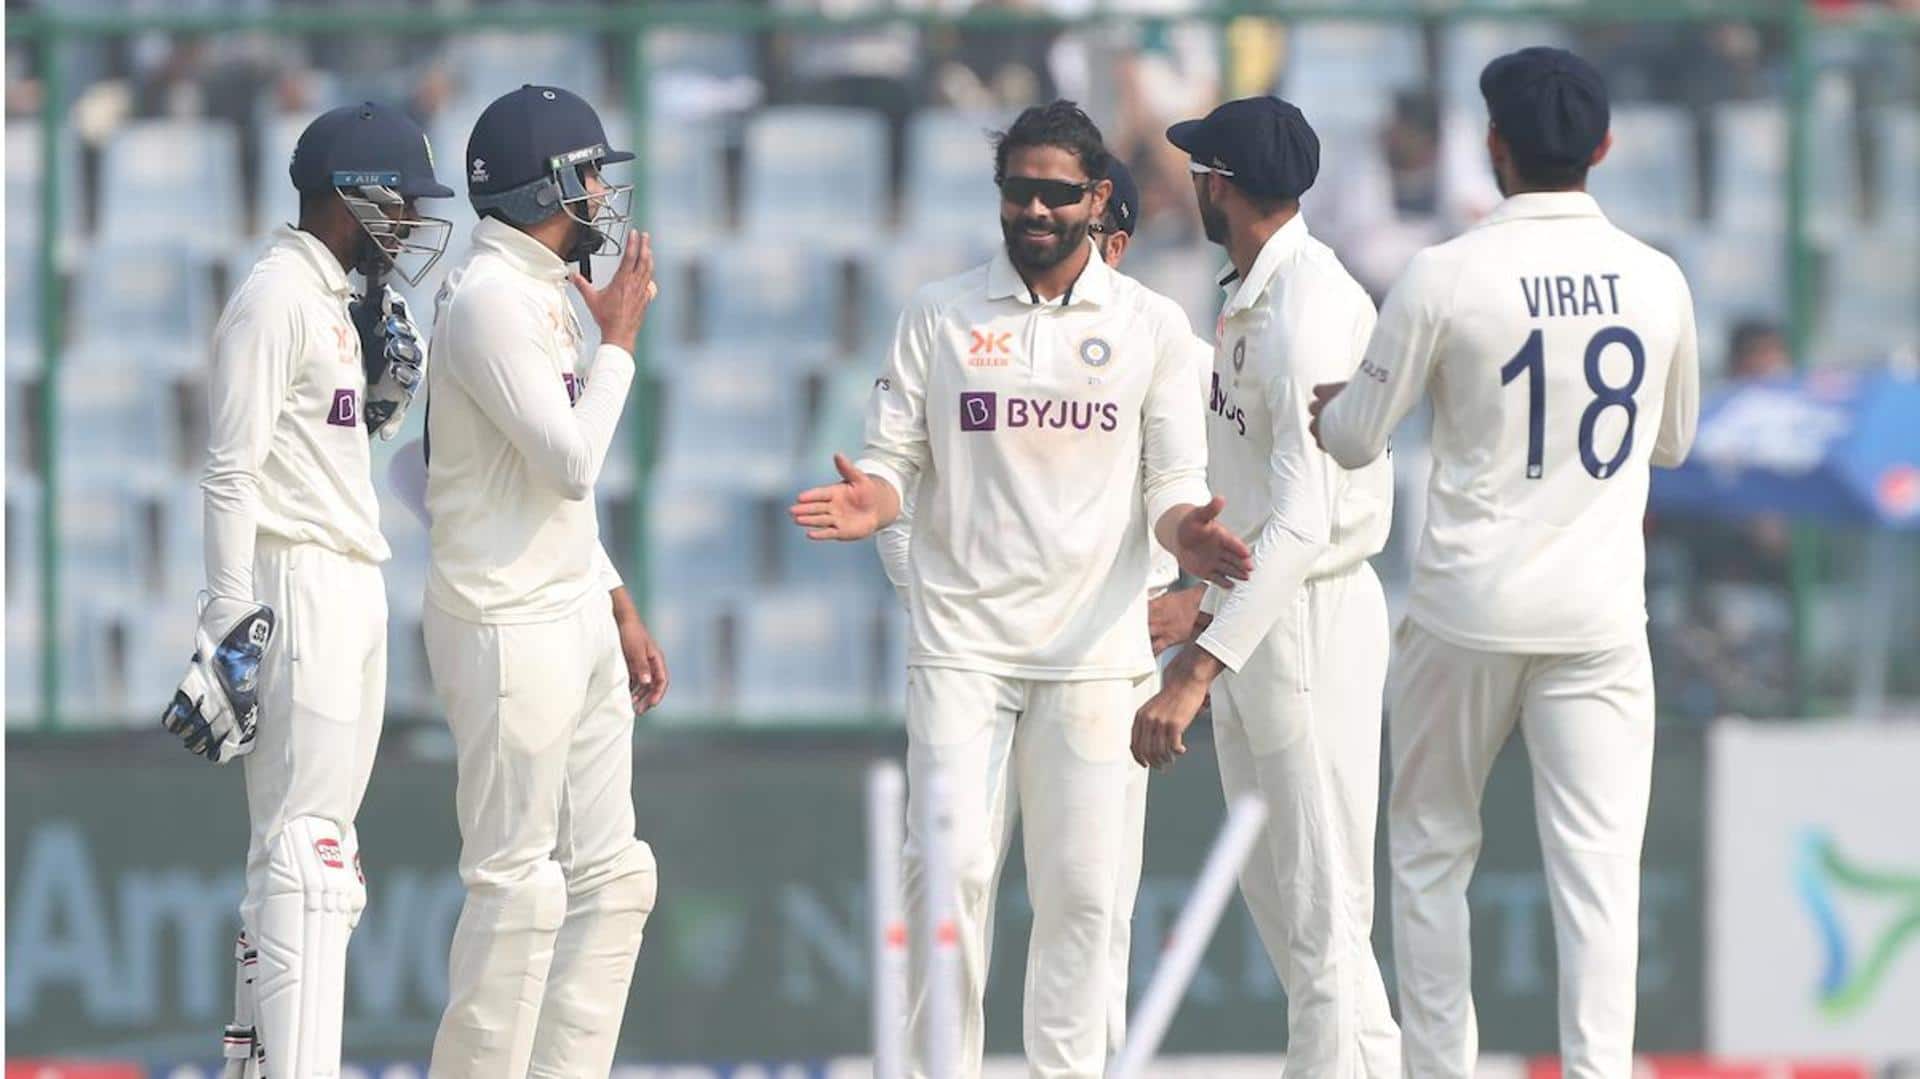 IND vs AUS, Ravindra Jadeja claims best Test figures: Stats